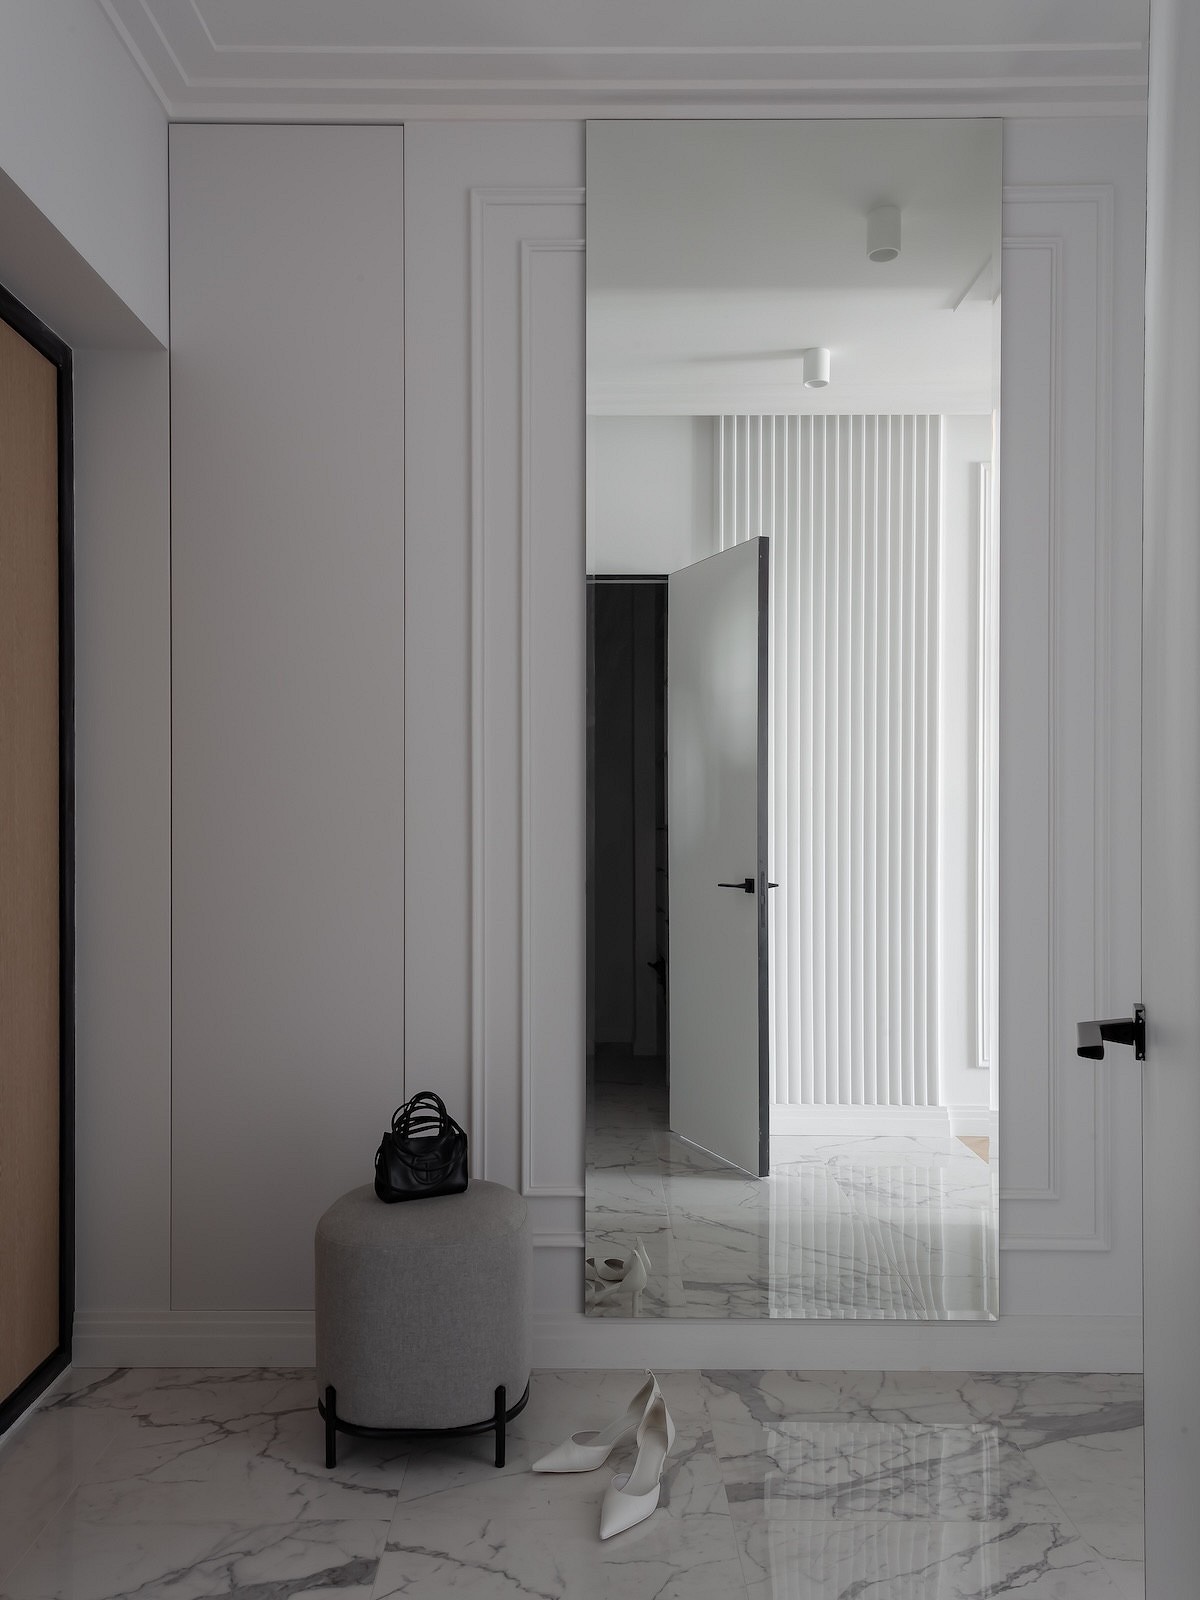 Квартира 86 кв. м в подарок дочери: как дизайнер сделала из двушки почти трешку с двумя ванными и гардеробными34